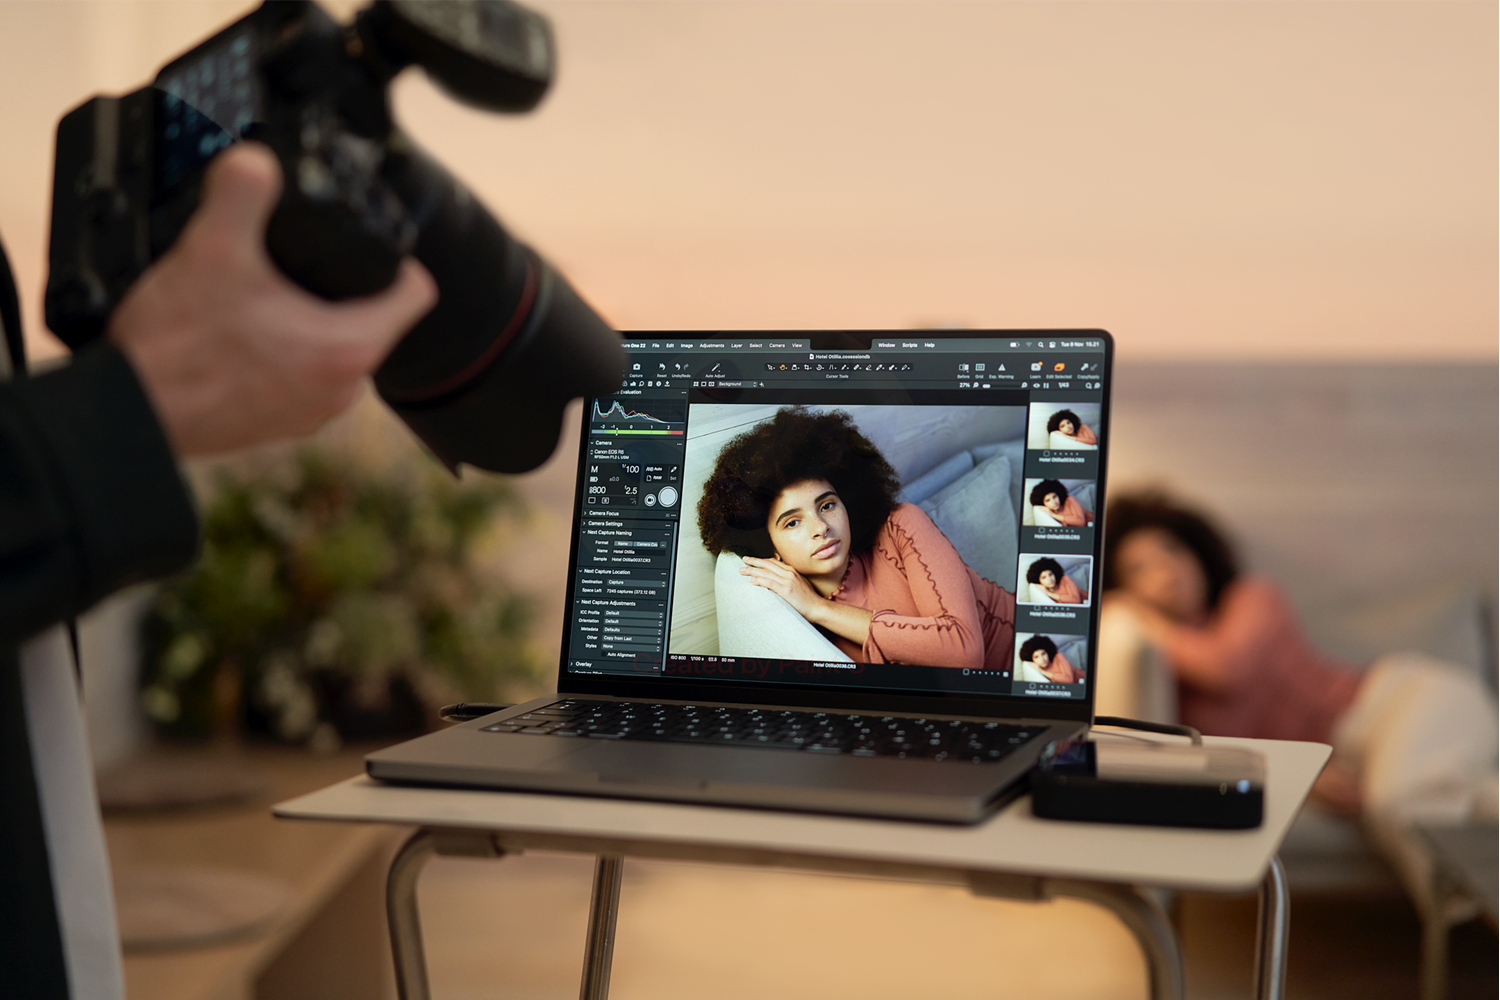 Fotos de una mujer tomadas con una cámara conectada de forma inalámbrica a un portátil.